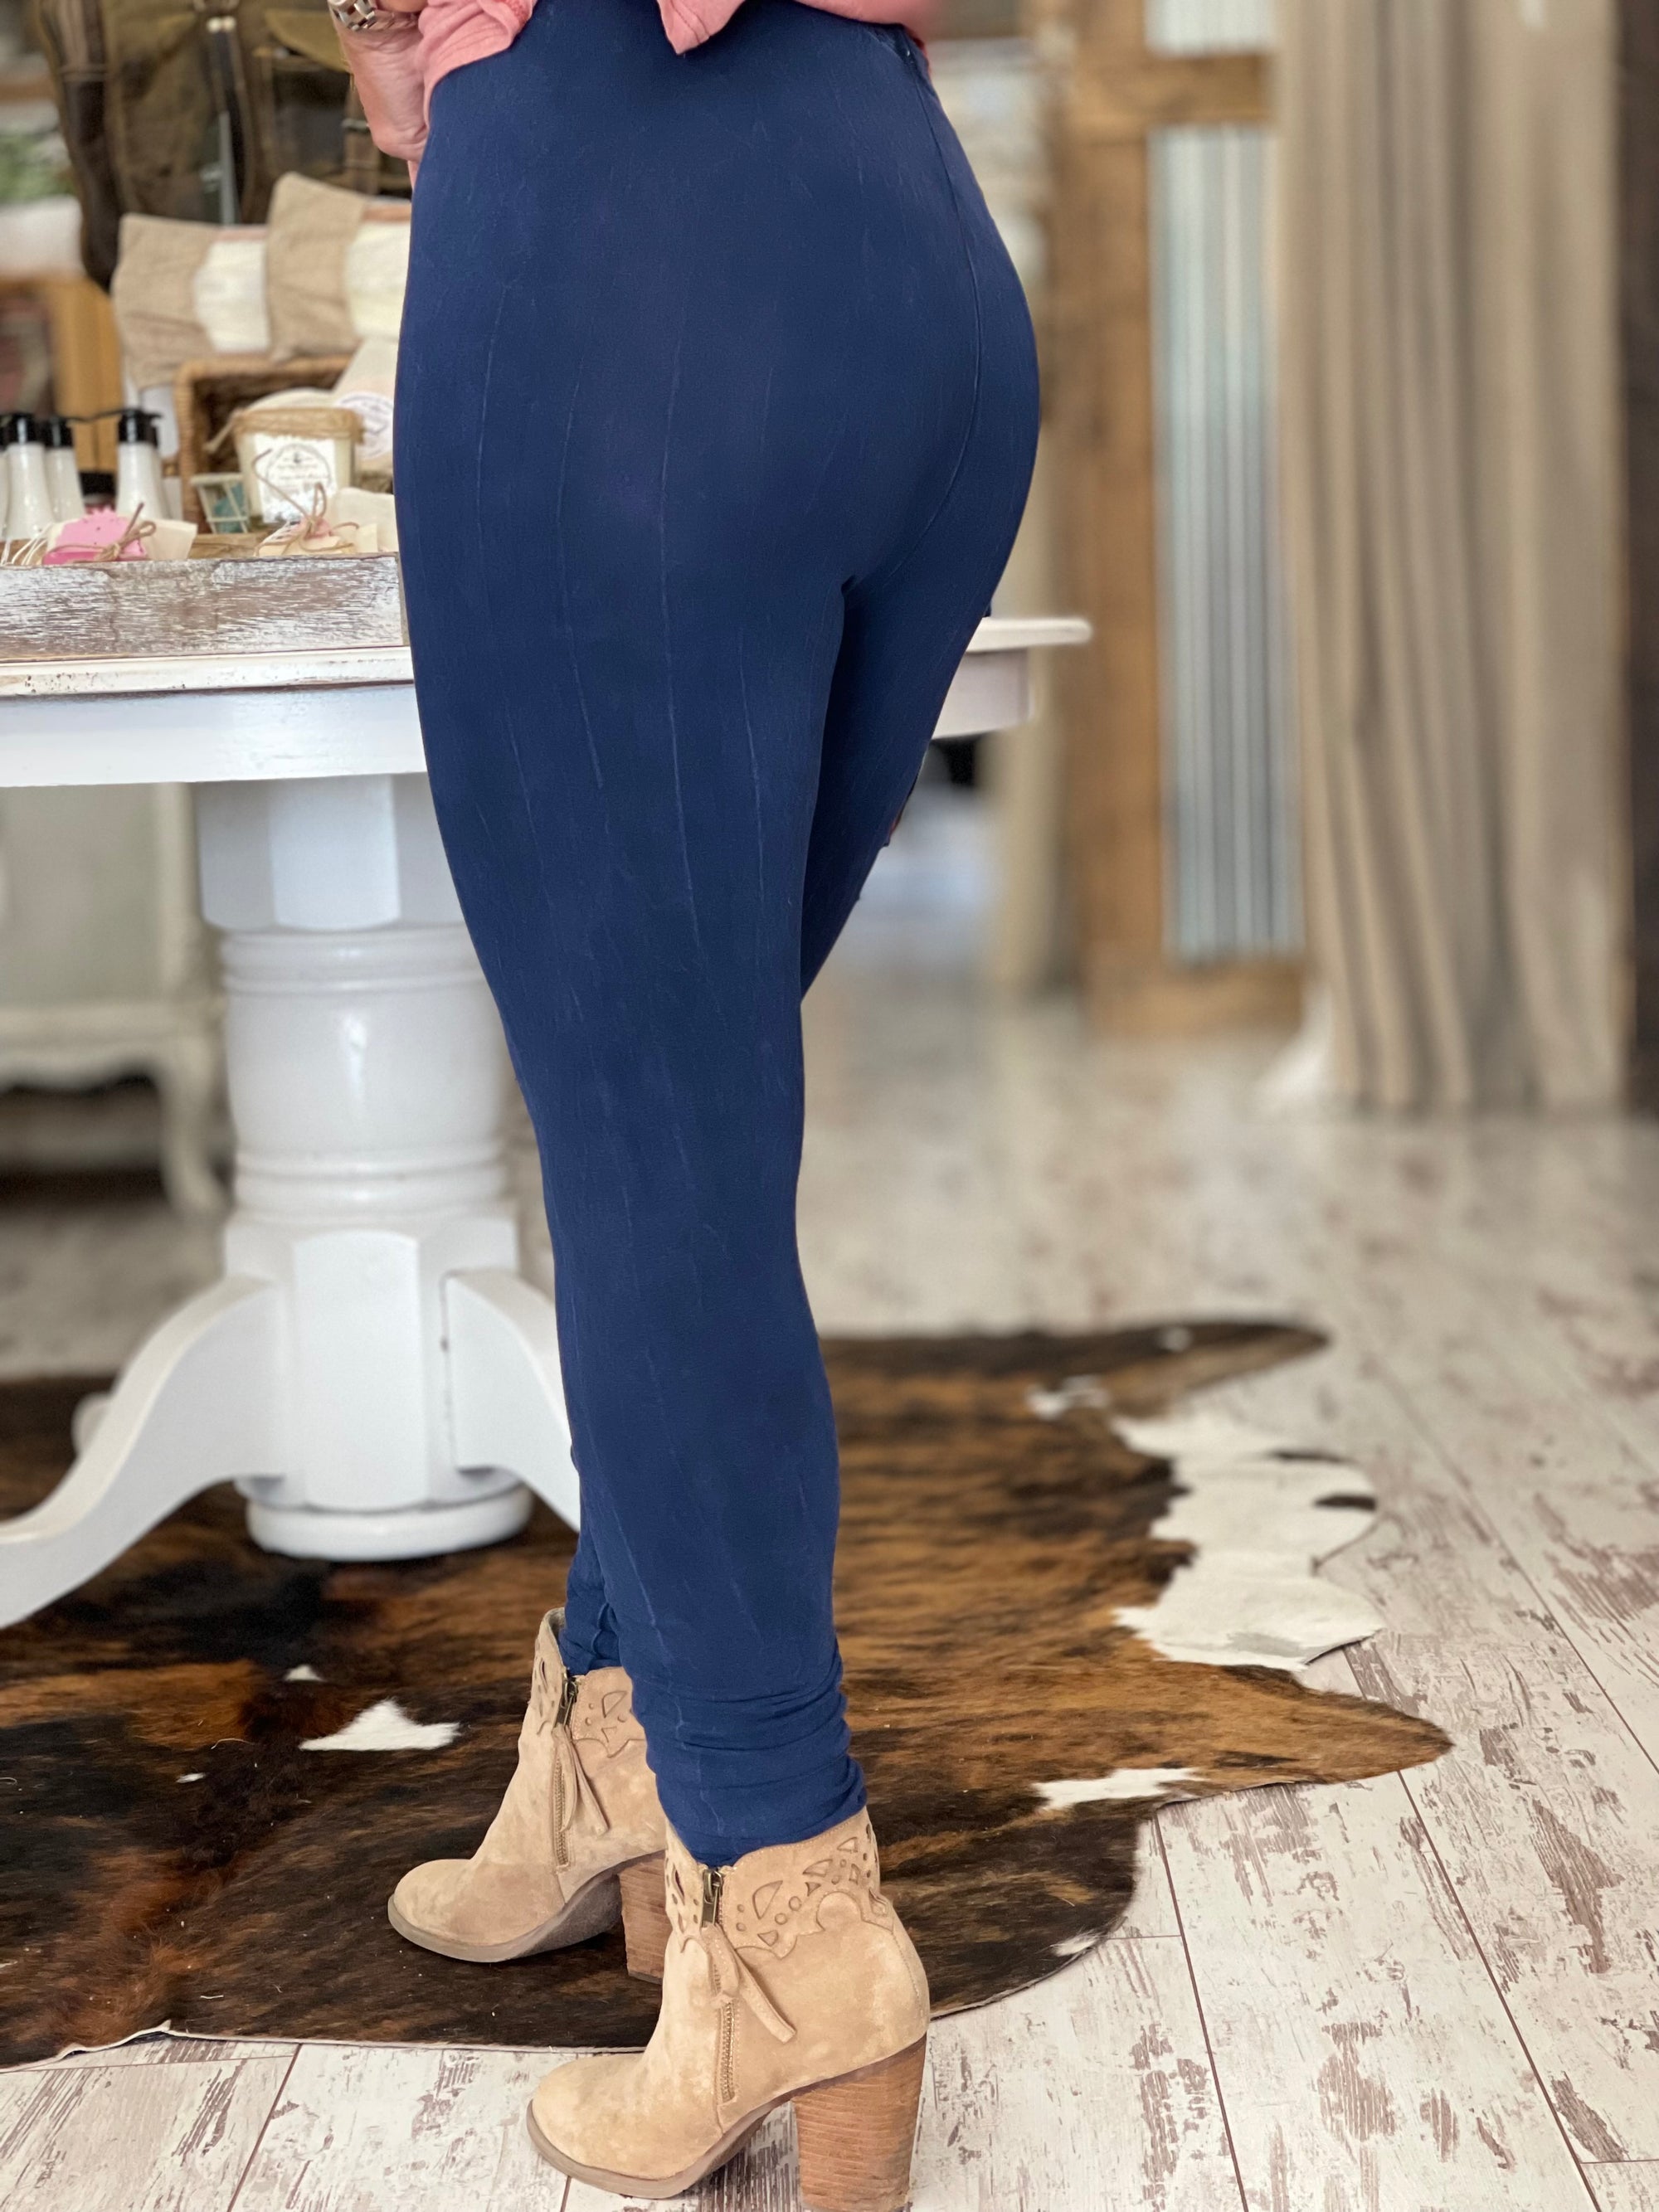 Aviana Navy Blue Velvet High-Waisted Leggings #navy #blue #leggings #outfit  Lounge in luxury … | Outfits with leggings, Blue leggings outfit, Velvet leggings  outfit